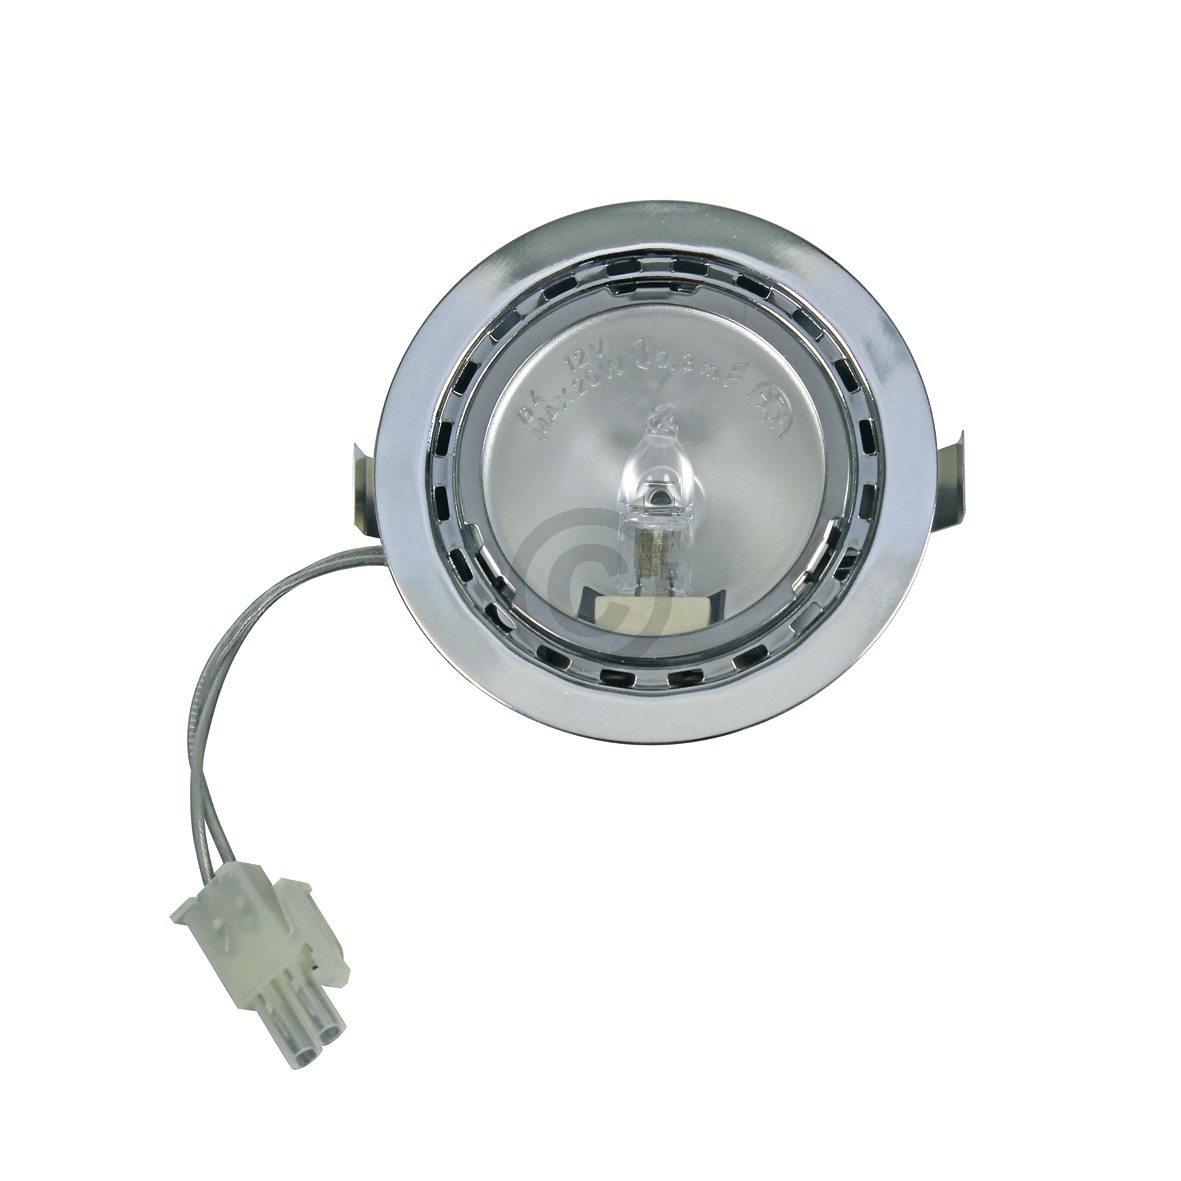 Halogenlampe Bosch 00175069 G4 20W 12V kpl mit Gehäuse für Dunstabzugshaube